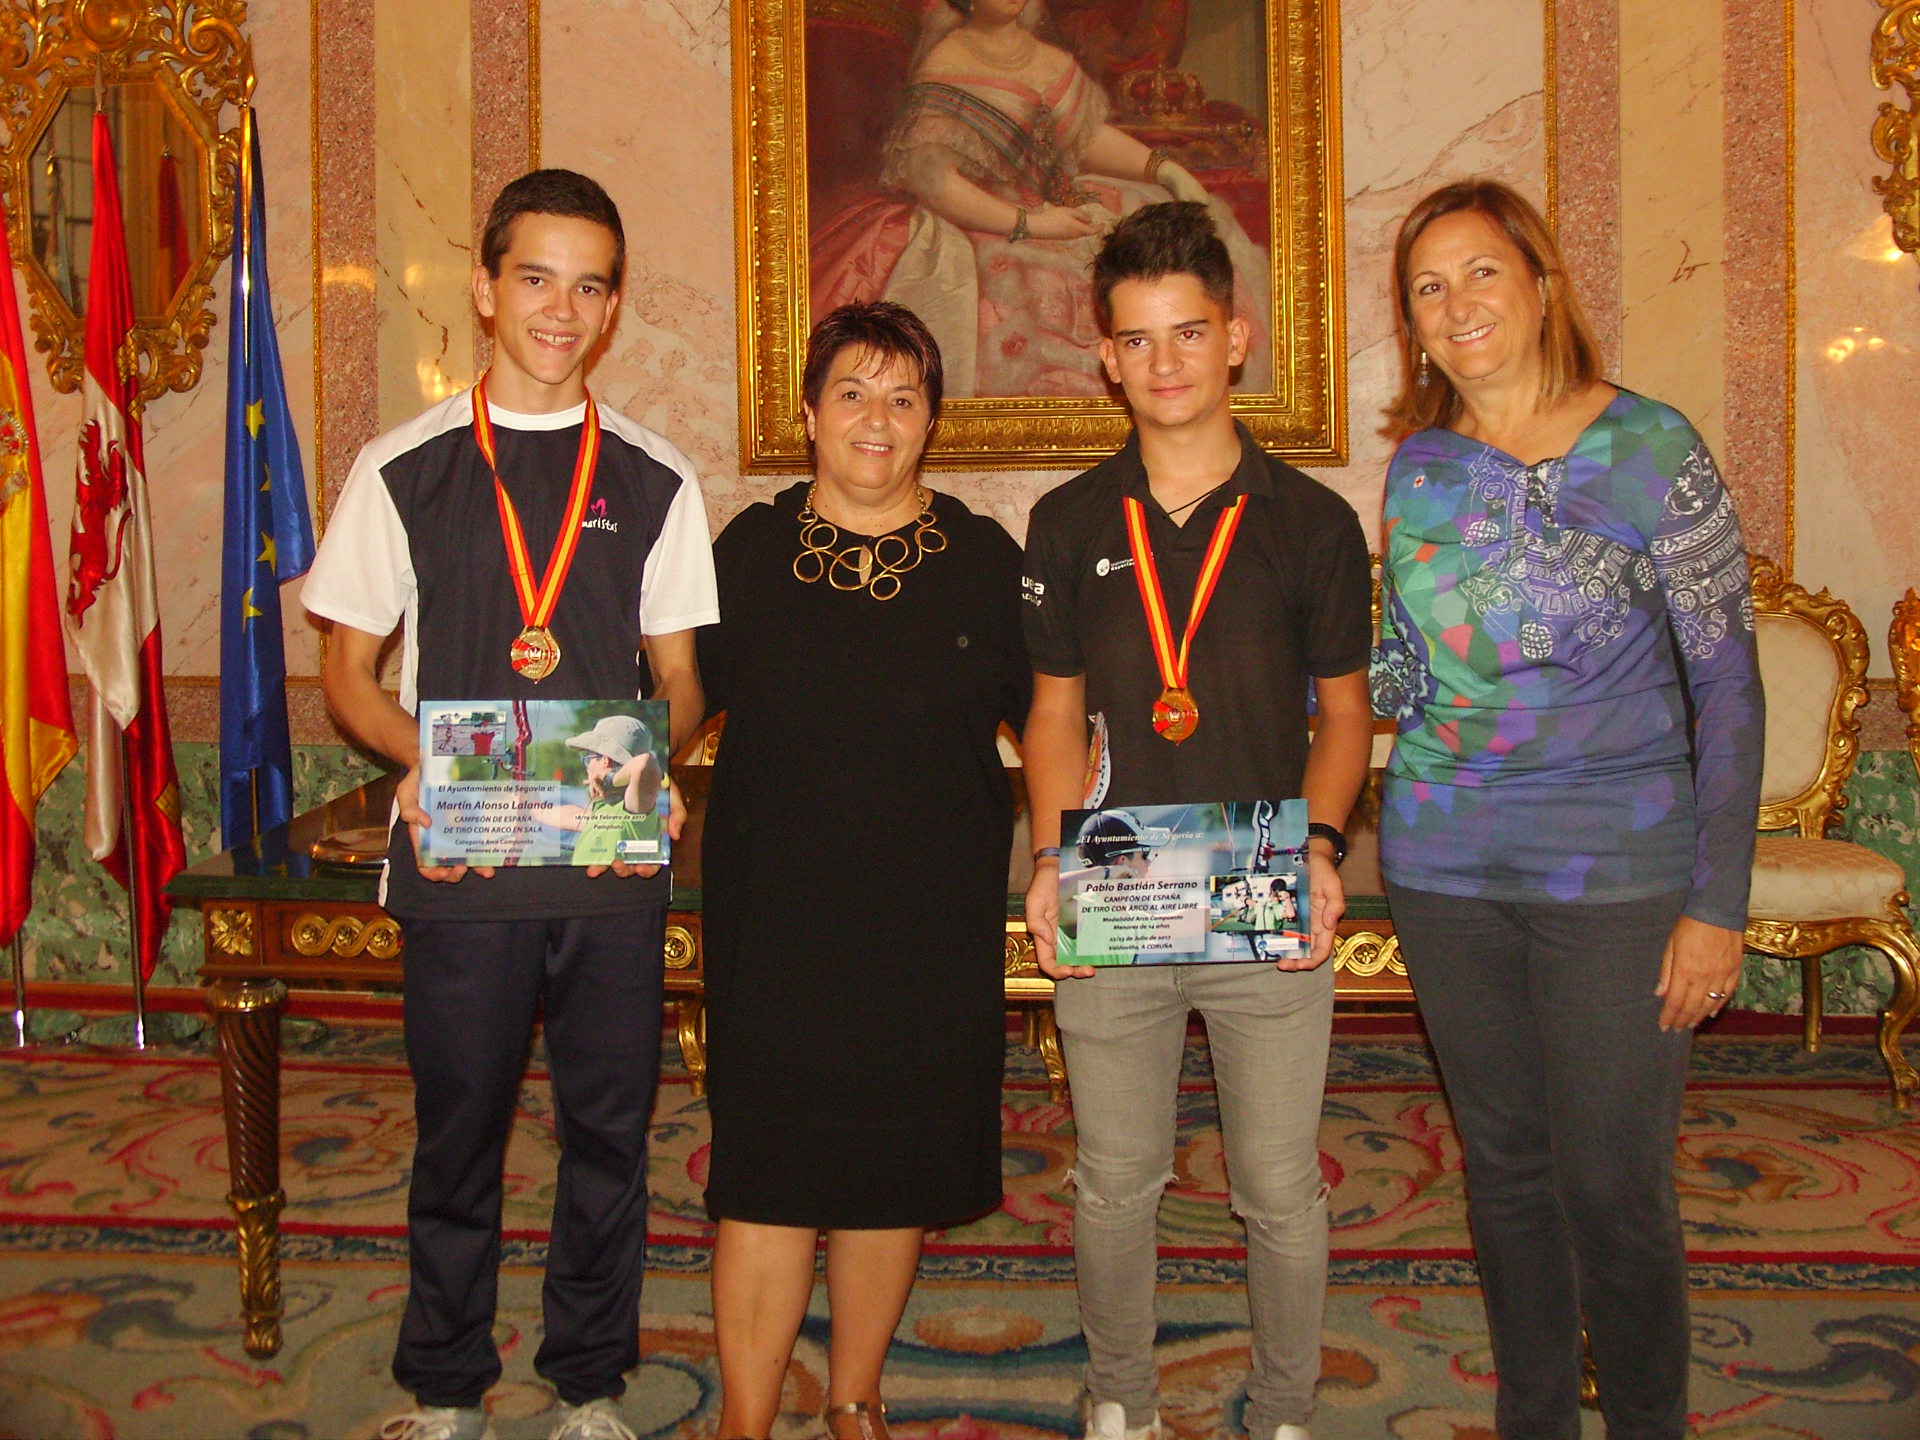 La alcaldesa y la concejala de deportes reciben a los Campeones de España de Tiro con Arco